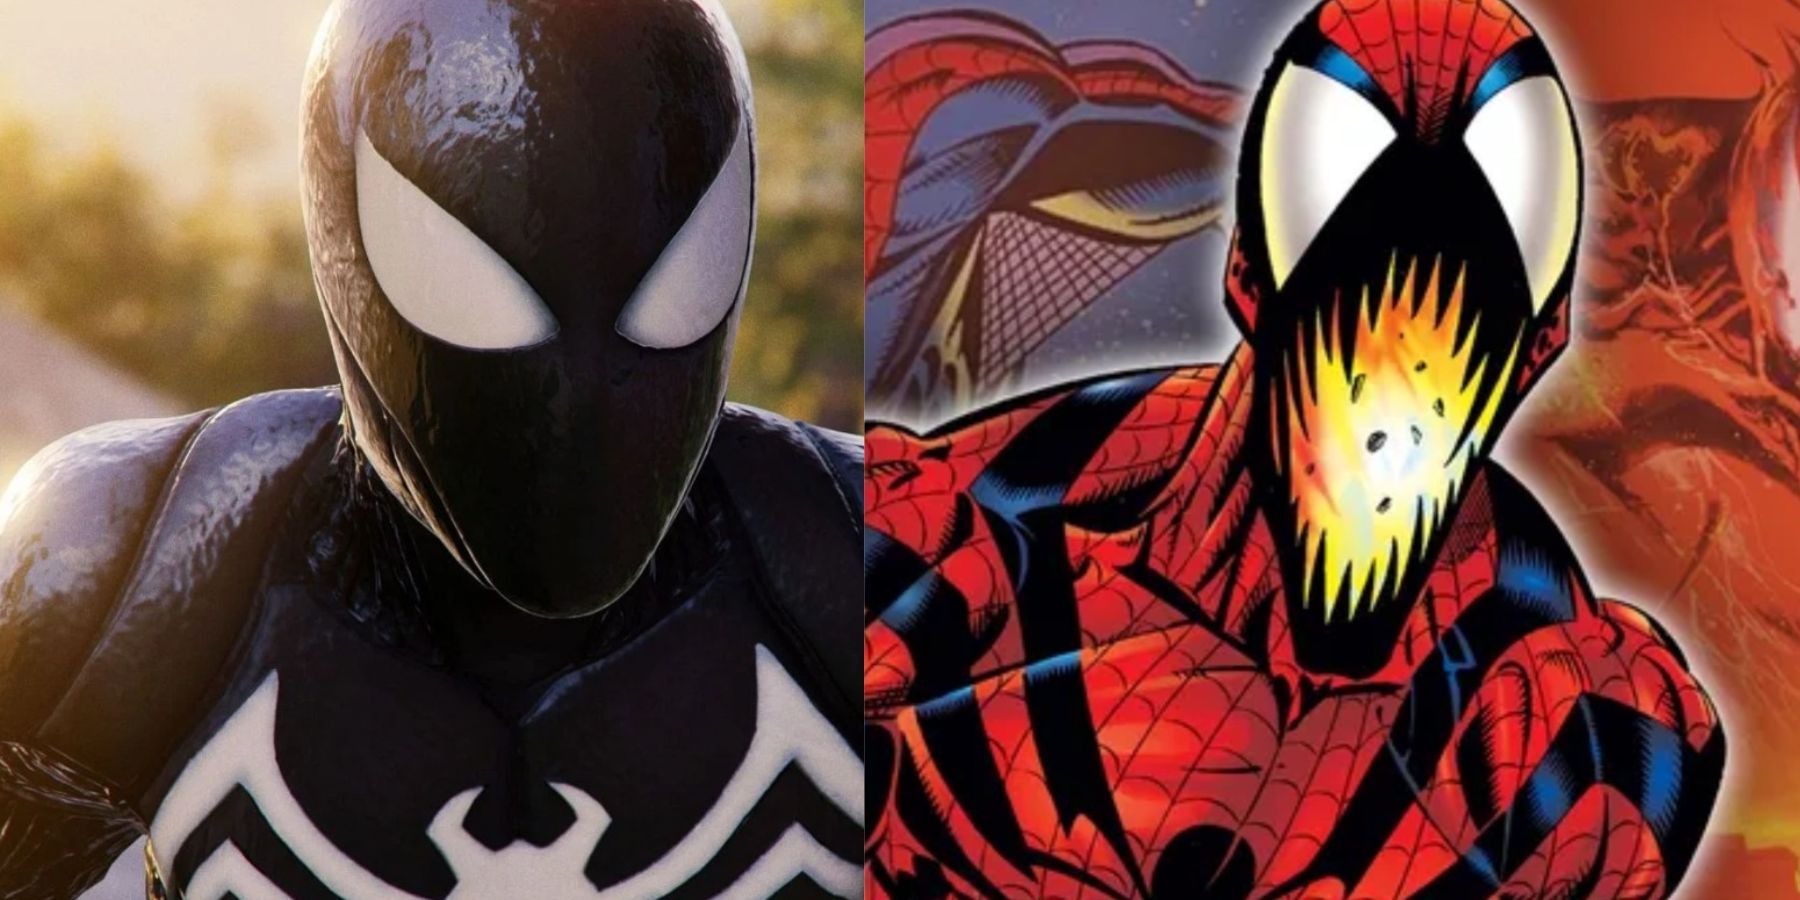 Black Suit Spider-Man. Spider-Carnage.